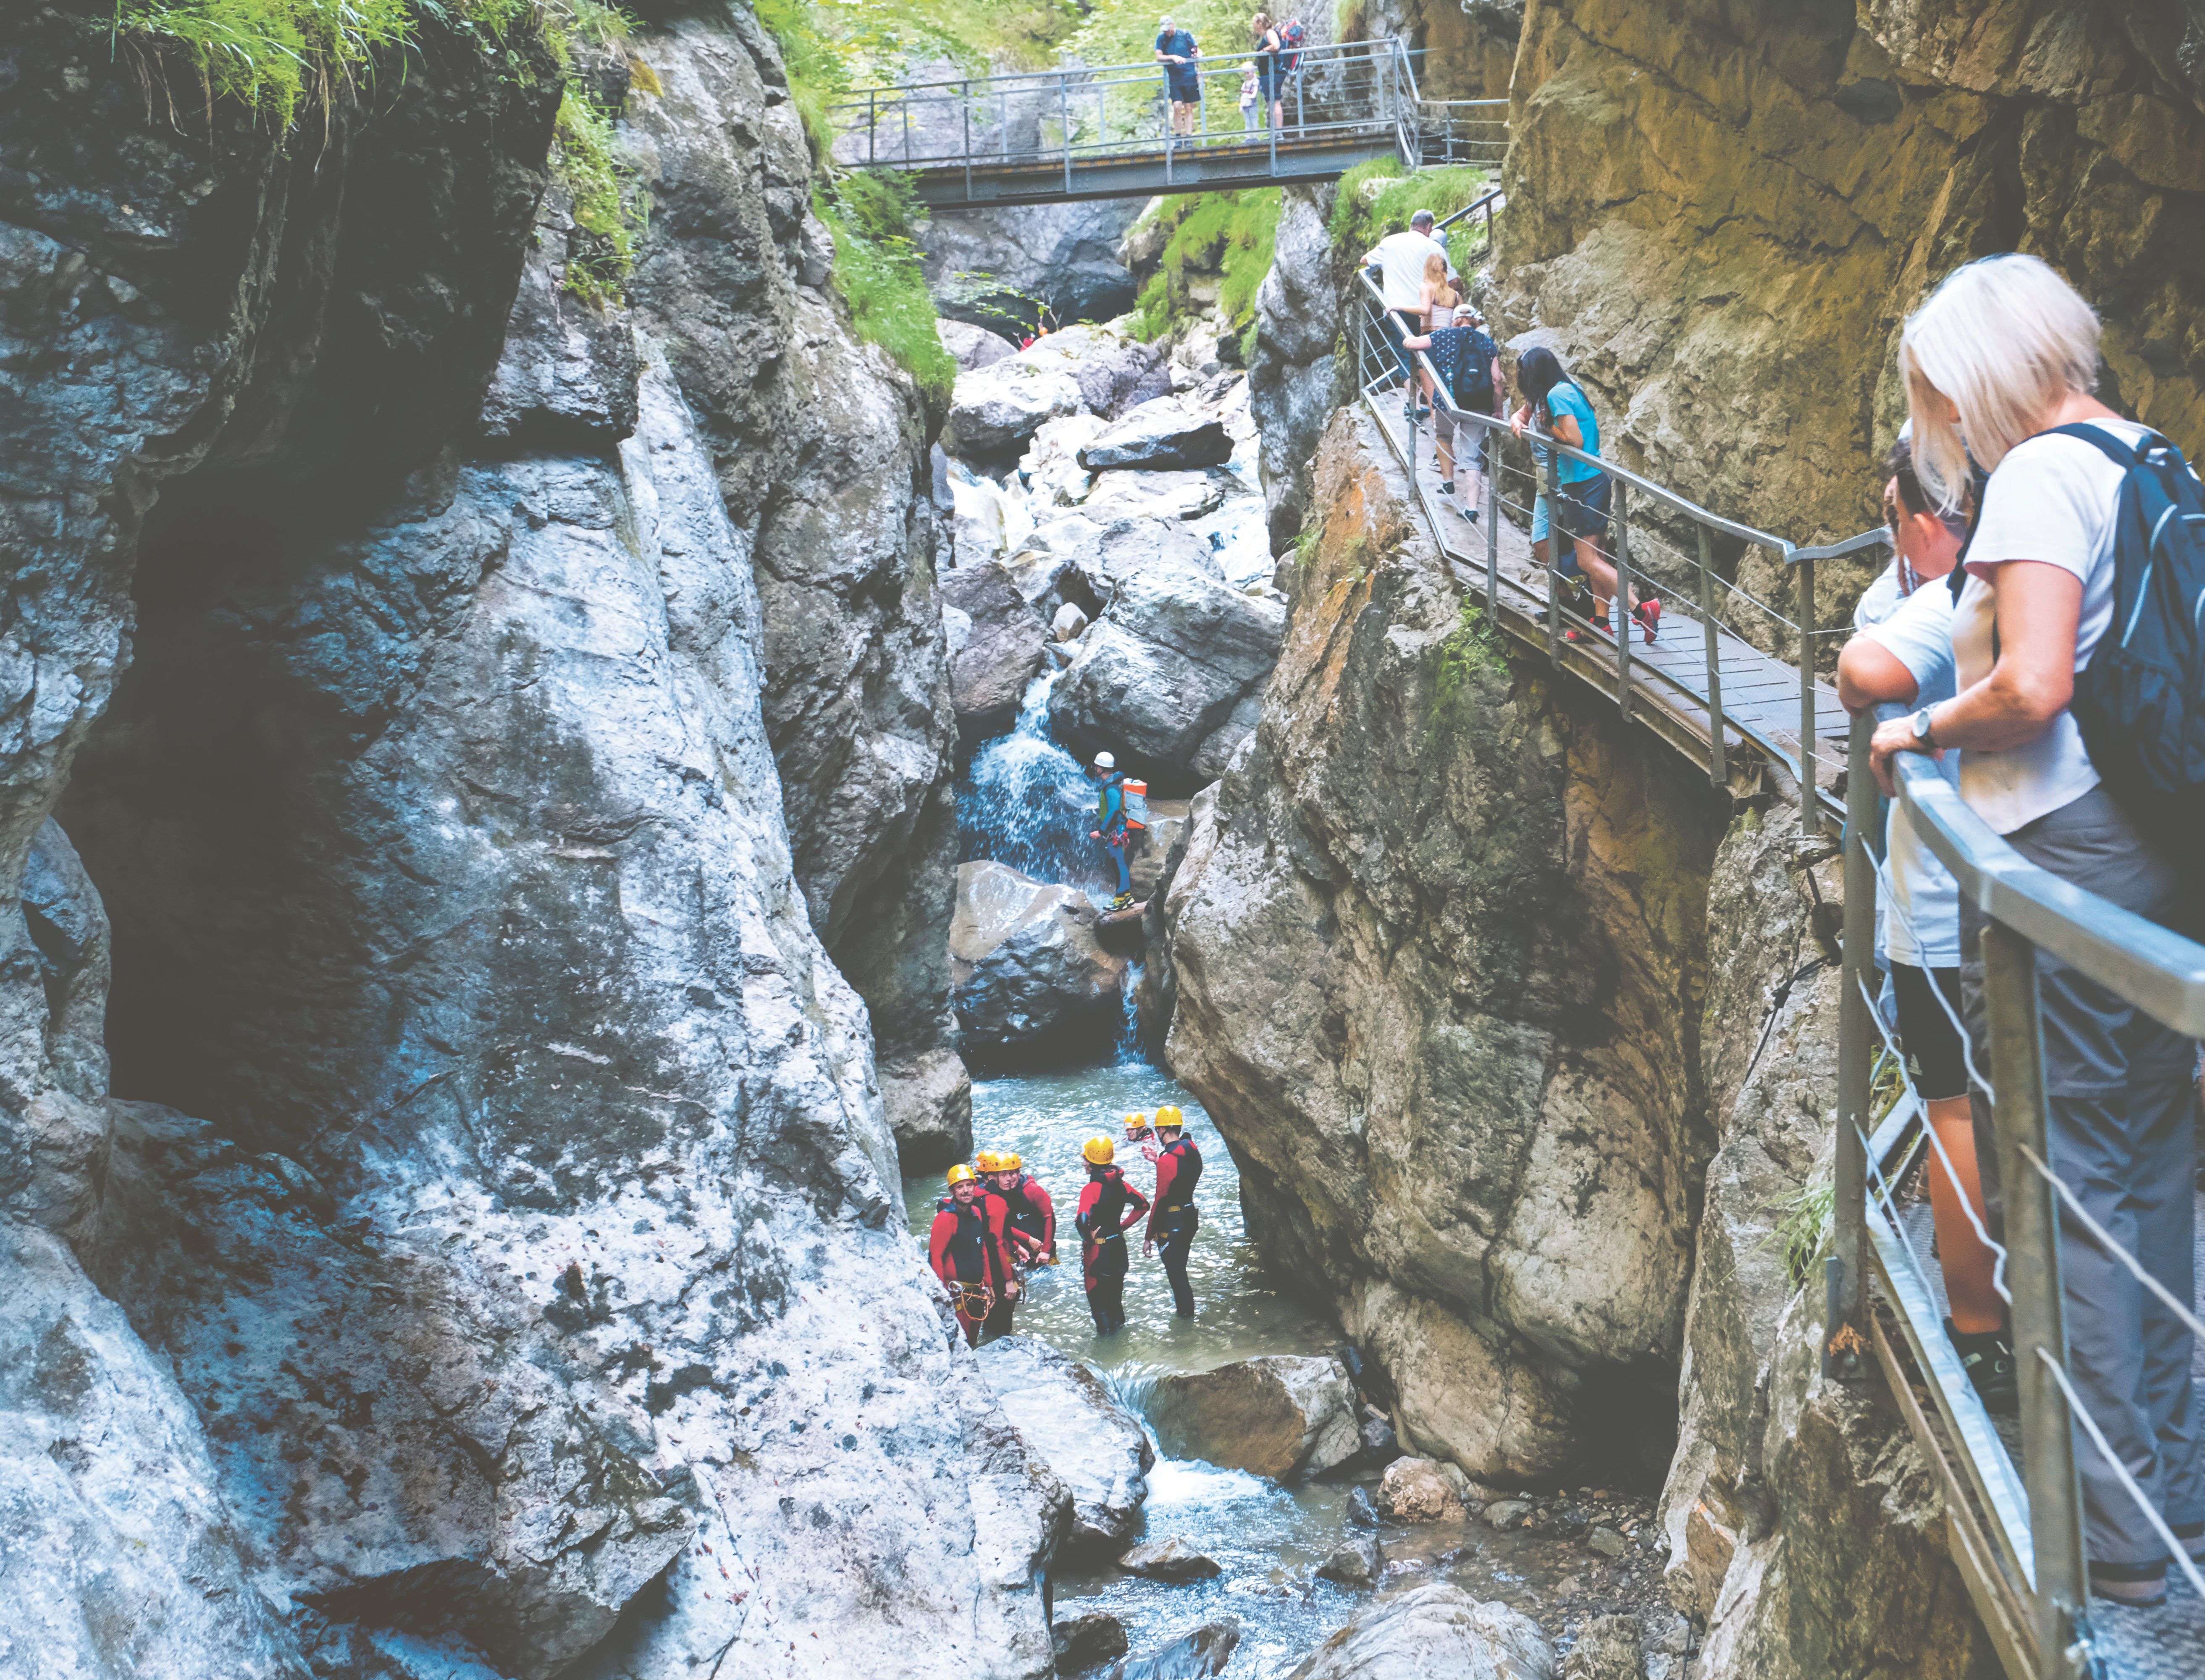 Die Besucher der Starzlachklamm in Sonthofen bewundern vom Wanderweg aus die abenteuerlustigen Canyonauten die bei ihrer Canyoningtour die Schlucht passieren.
Das Canyoning wird besonders in der Klamm in Sonthofen immer beliebter.